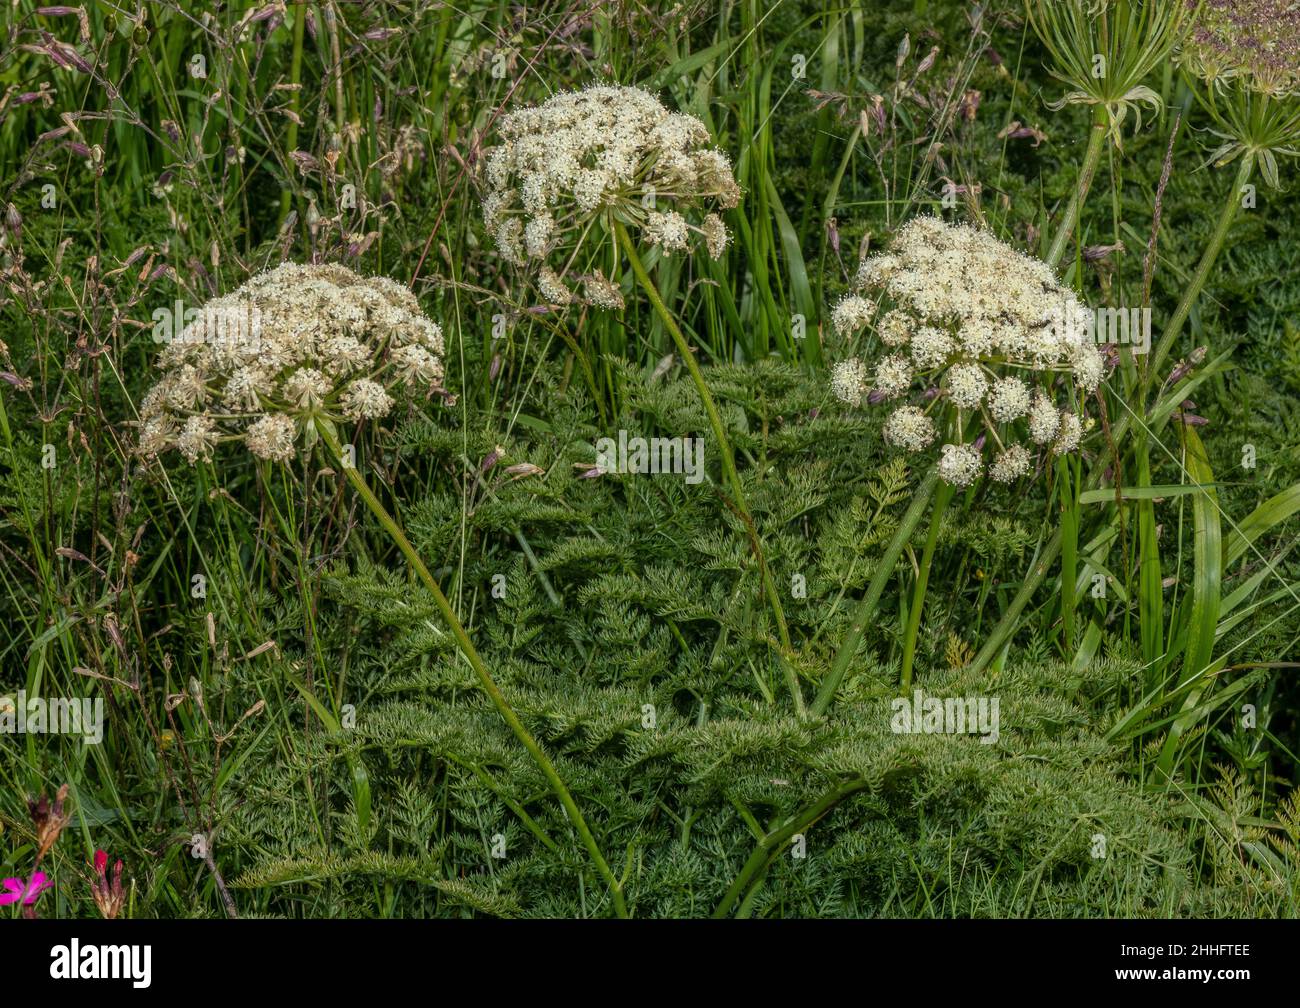 Haller's Sermountain, Laserpitium halleri in flower in the Swiss Alps. Stock Photo